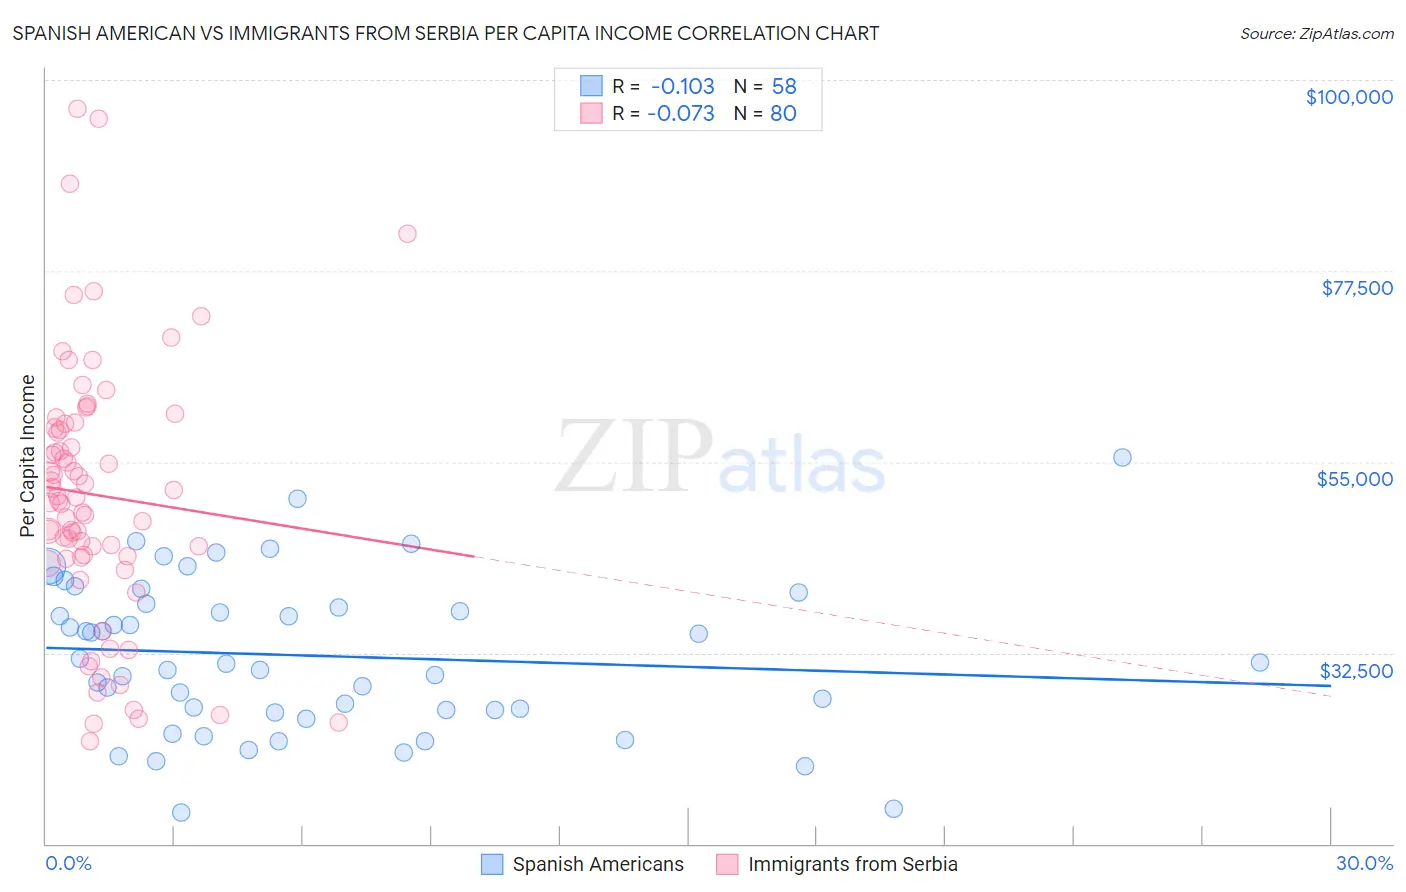 Spanish American vs Immigrants from Serbia Per Capita Income